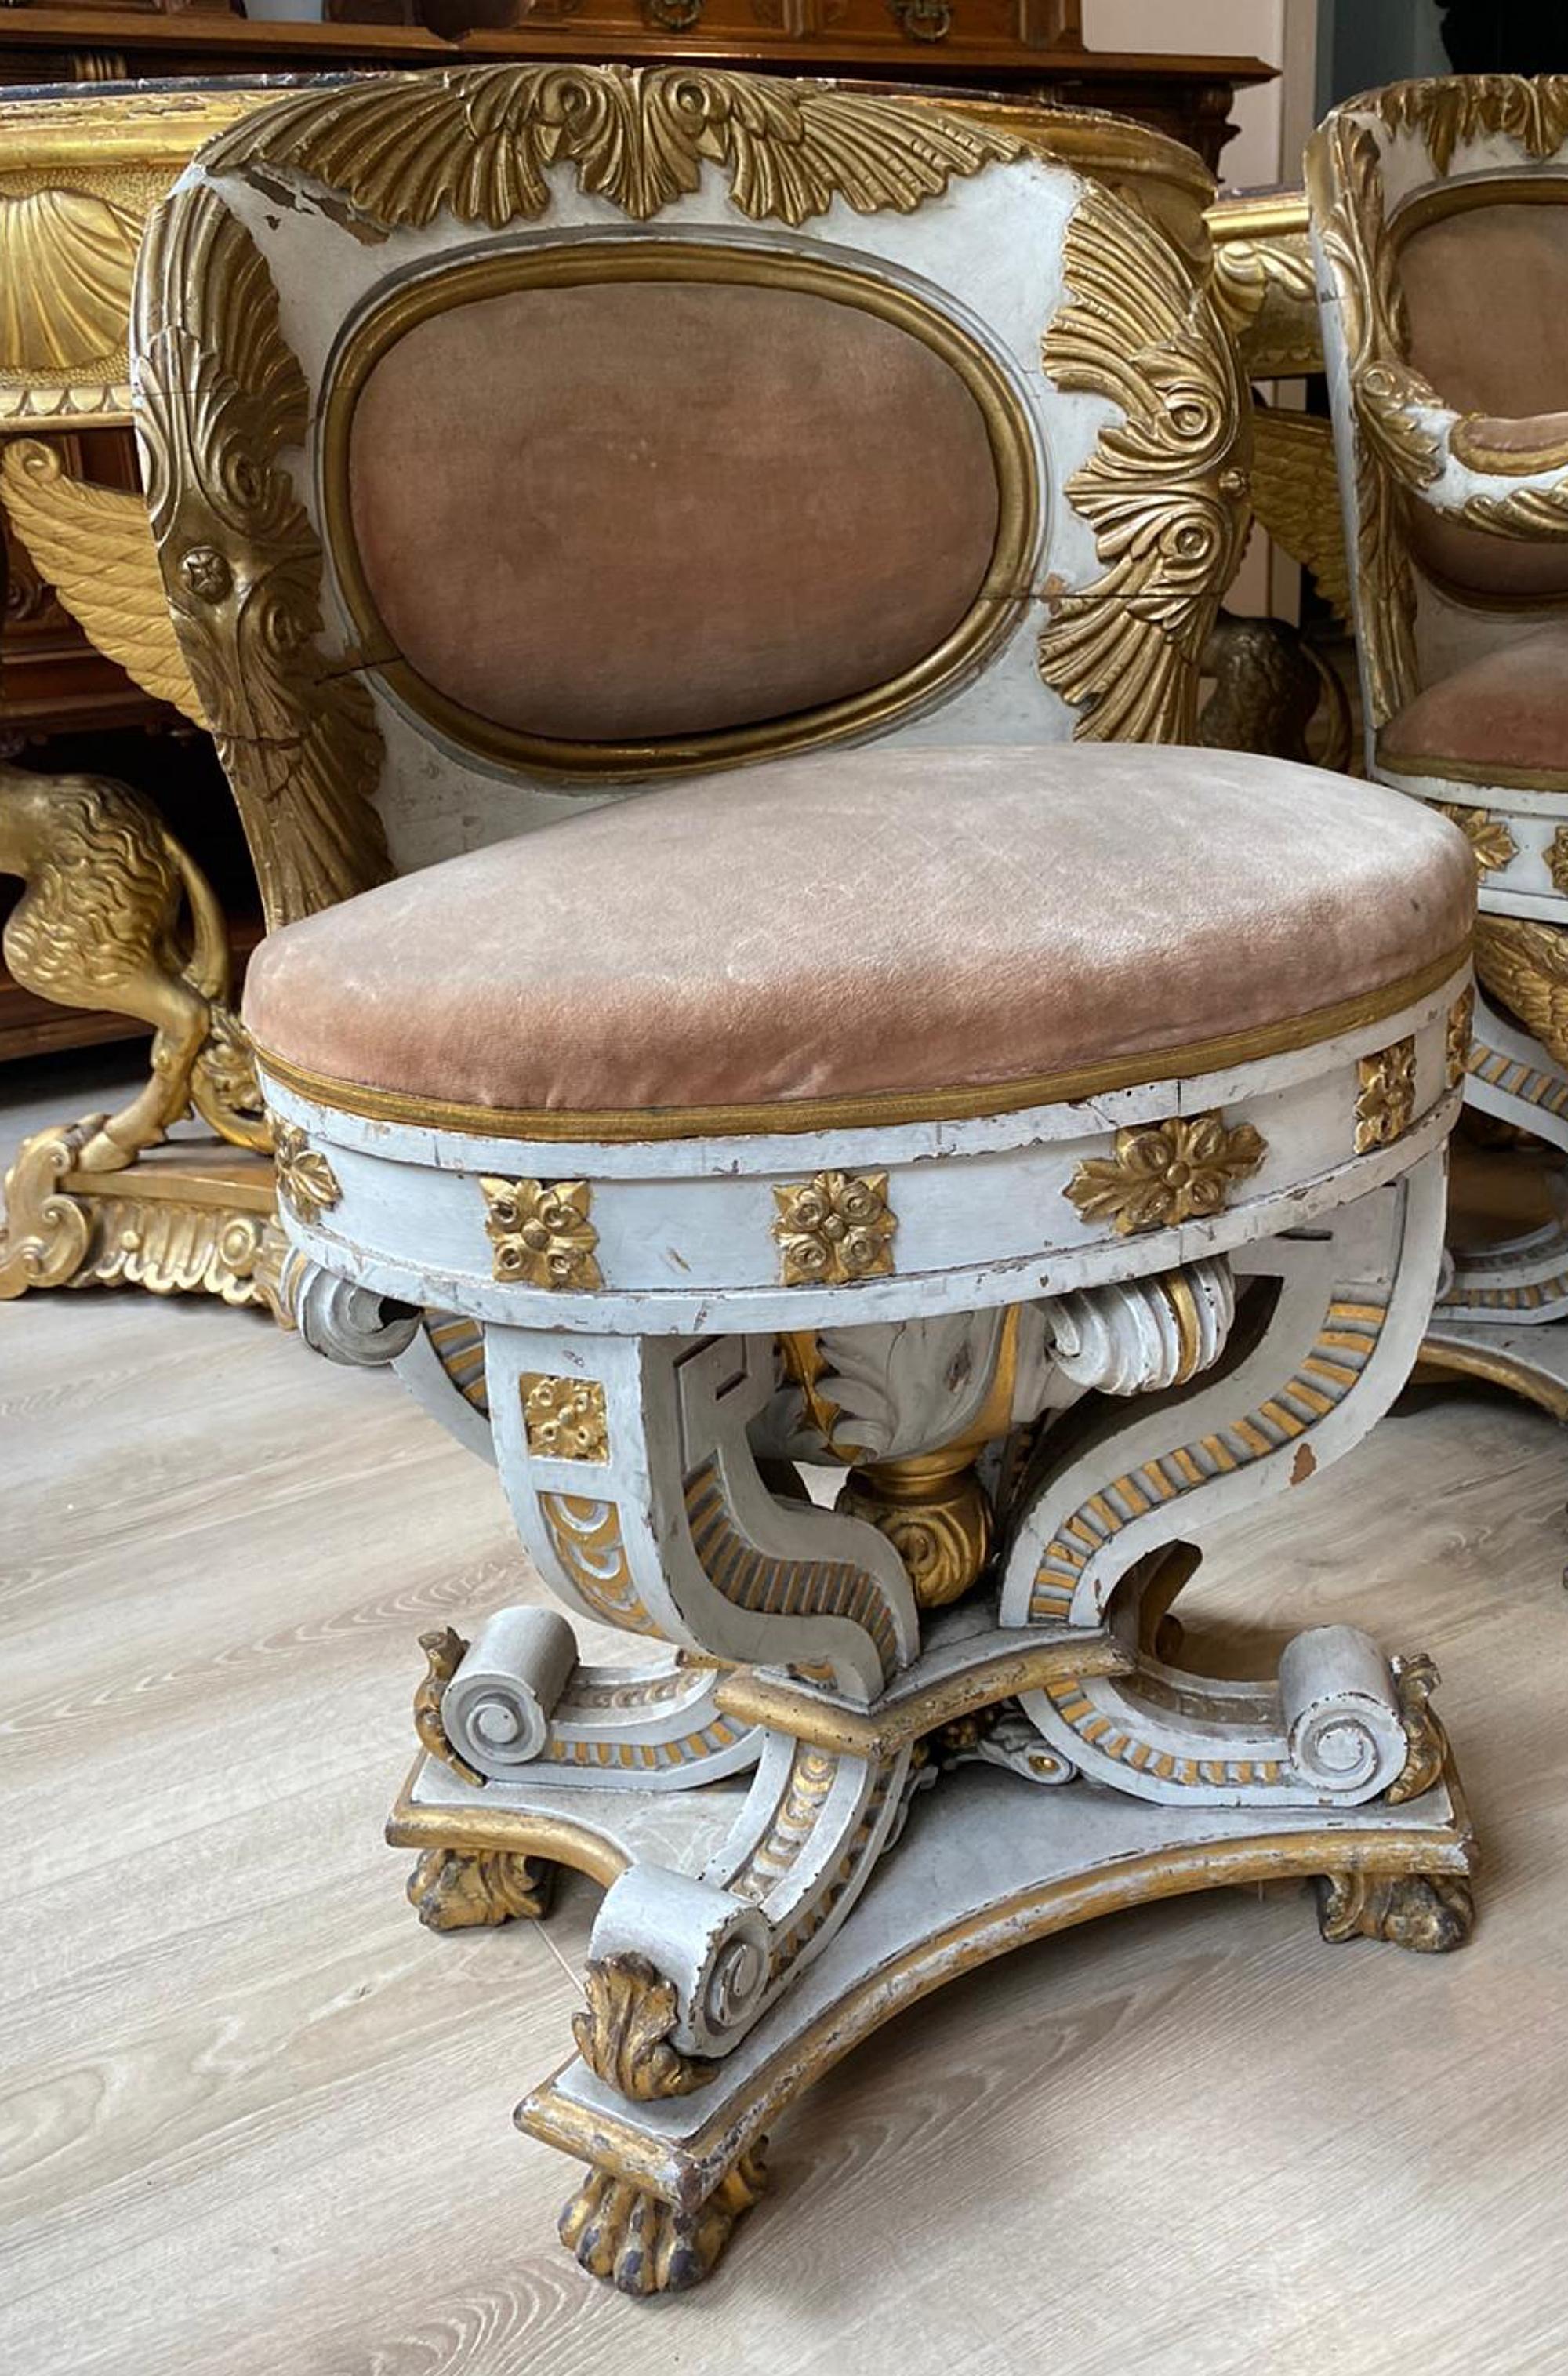 Ensemble de fauteuils et 2 chaises Premier Empire Napoléon III début 19ème siècle
France
mesure le fauteuil : 86cm x 64cm x 54cm
mesure les chaises : 82cm x 50cm x 45cm
bois
provençale : Famille romaine
Très bon état.